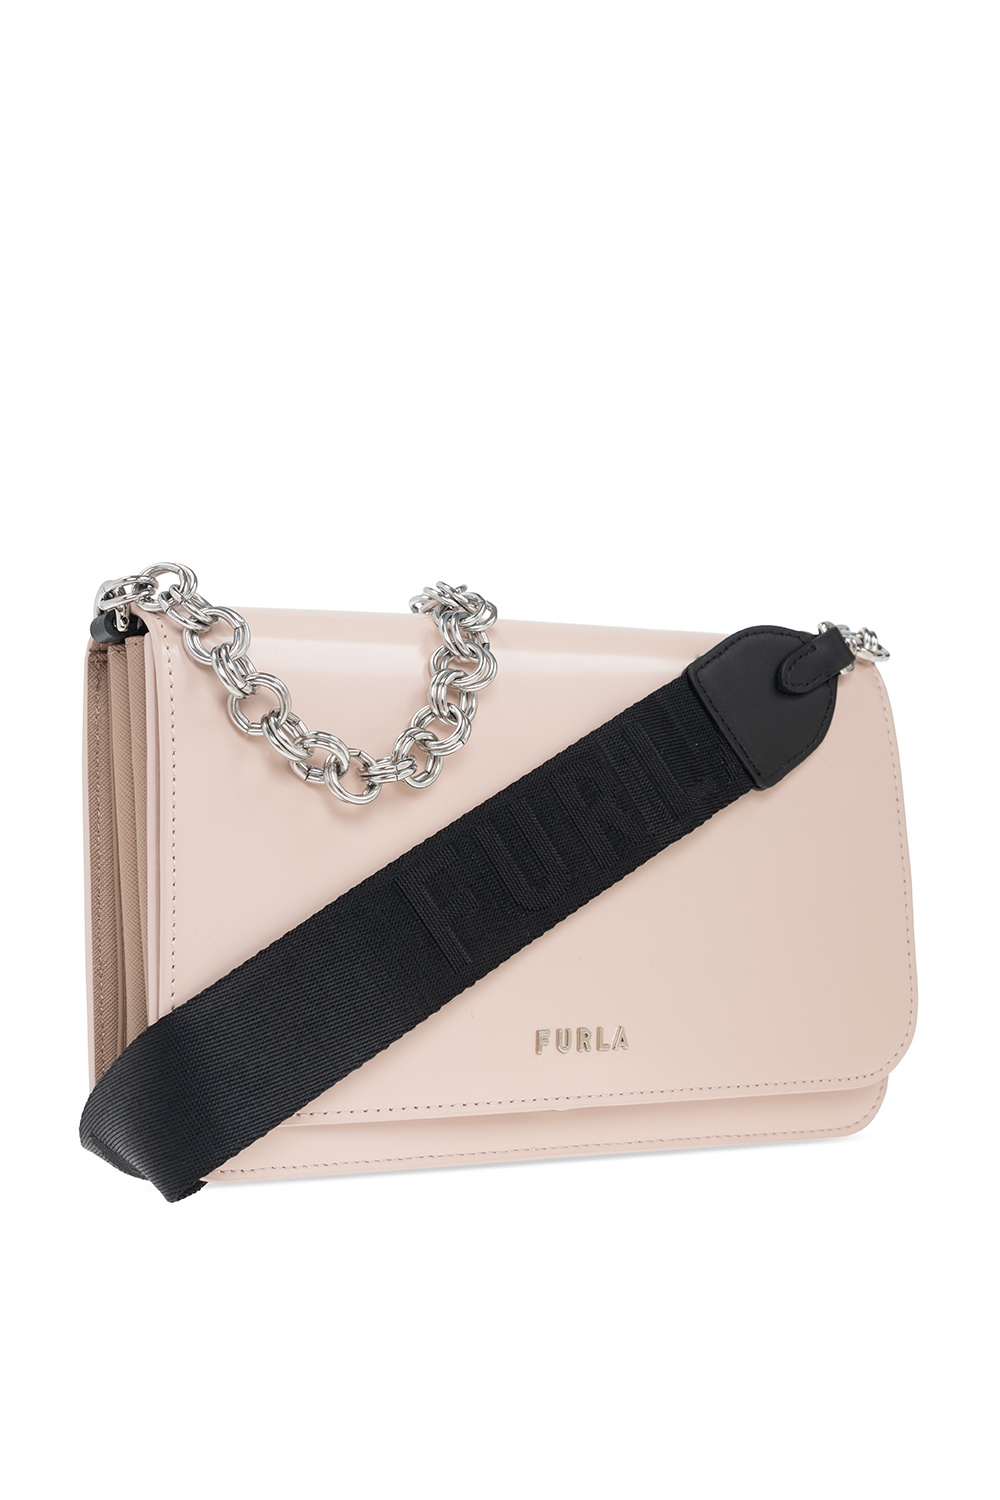 Furla ‘Splendida Small’ shoulder bag